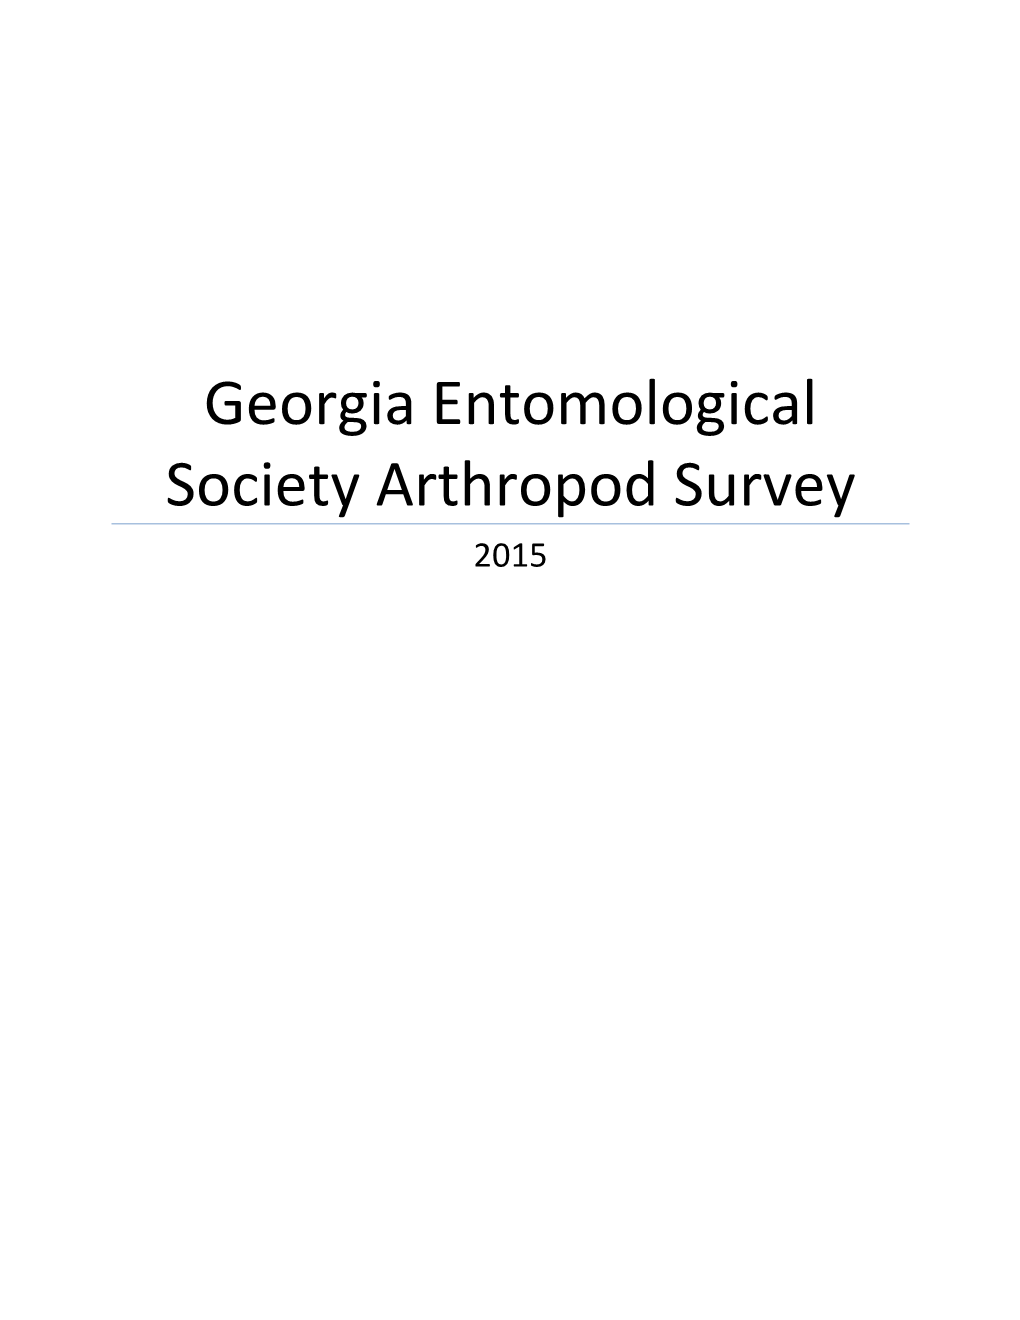 Georgia Entomological Society Arthropod Survey 2015